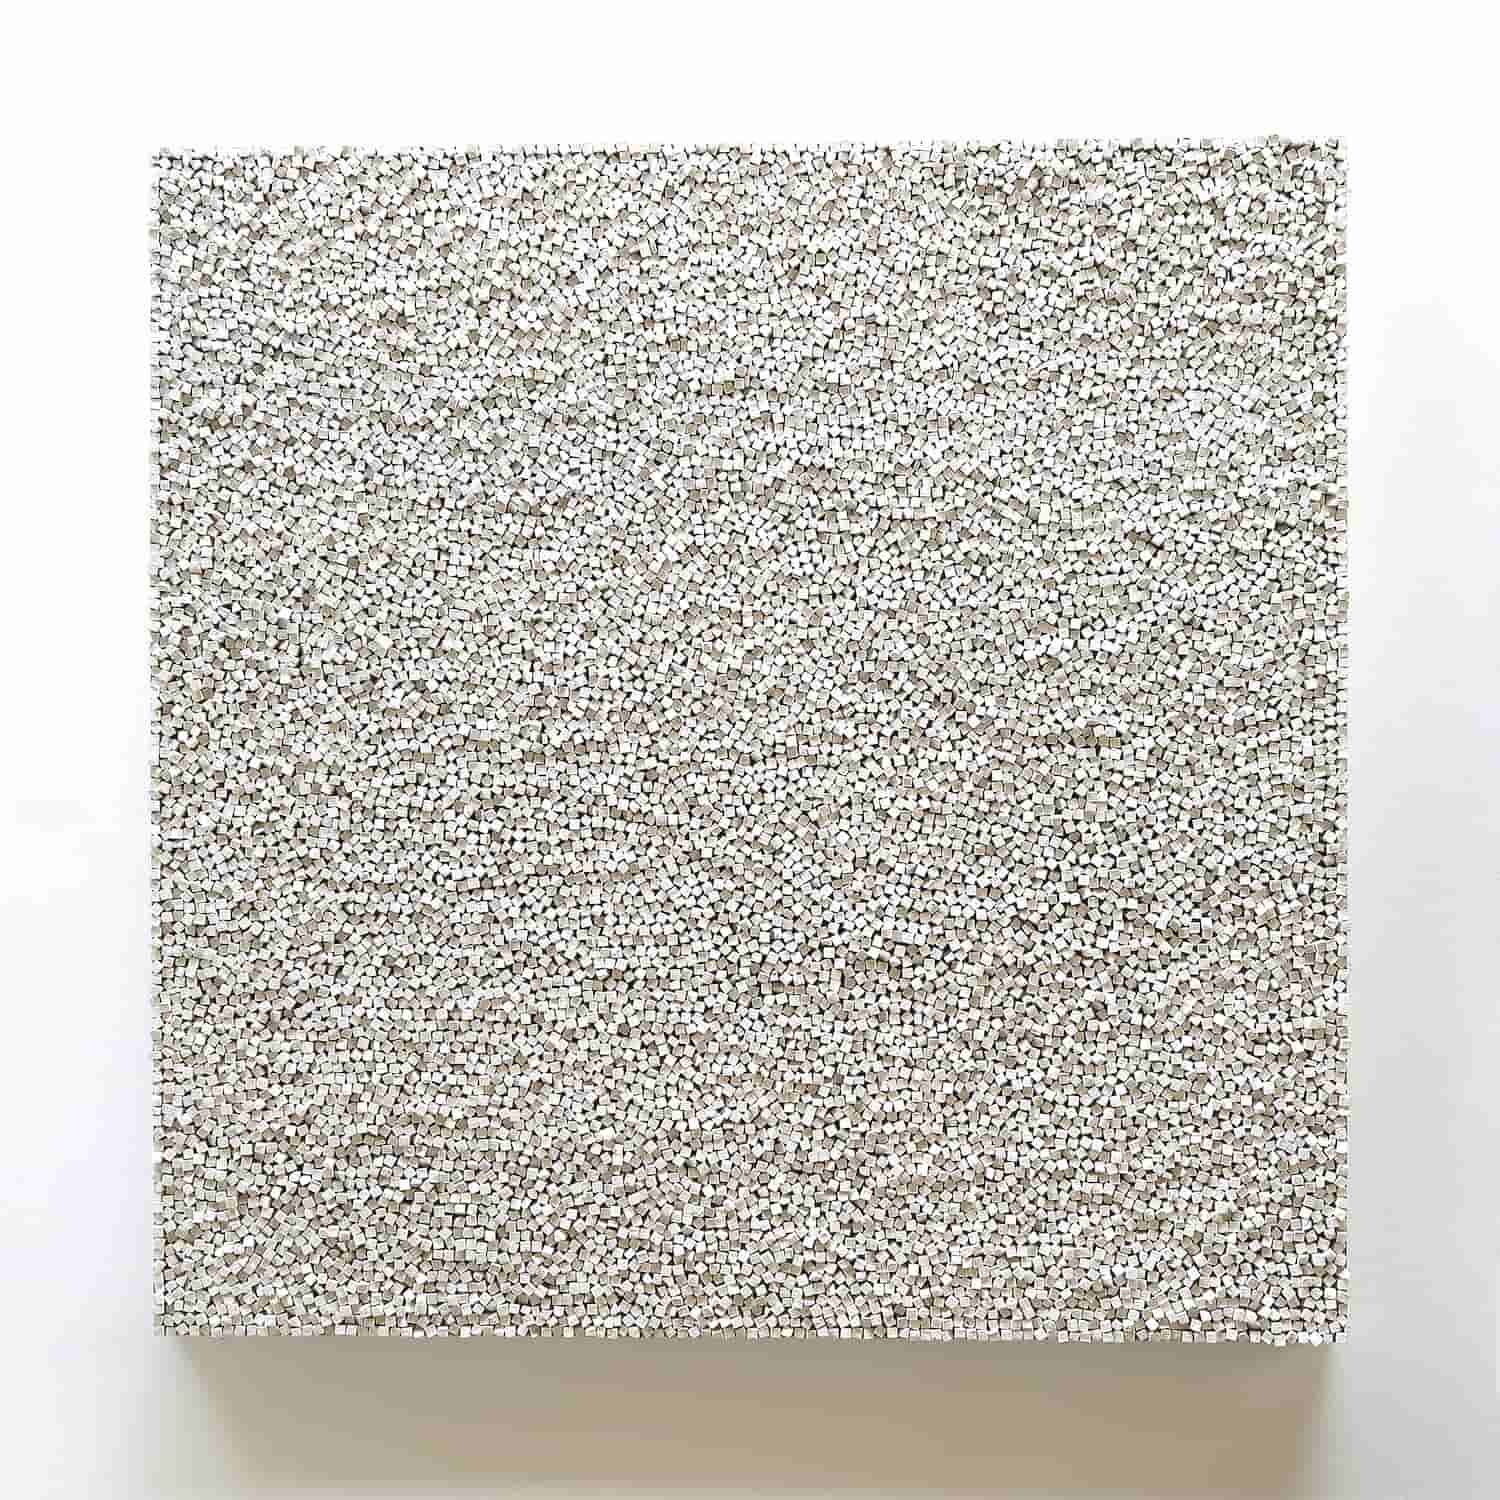 „WEISS V“, Kreide, 150 x 150 cm, 2015